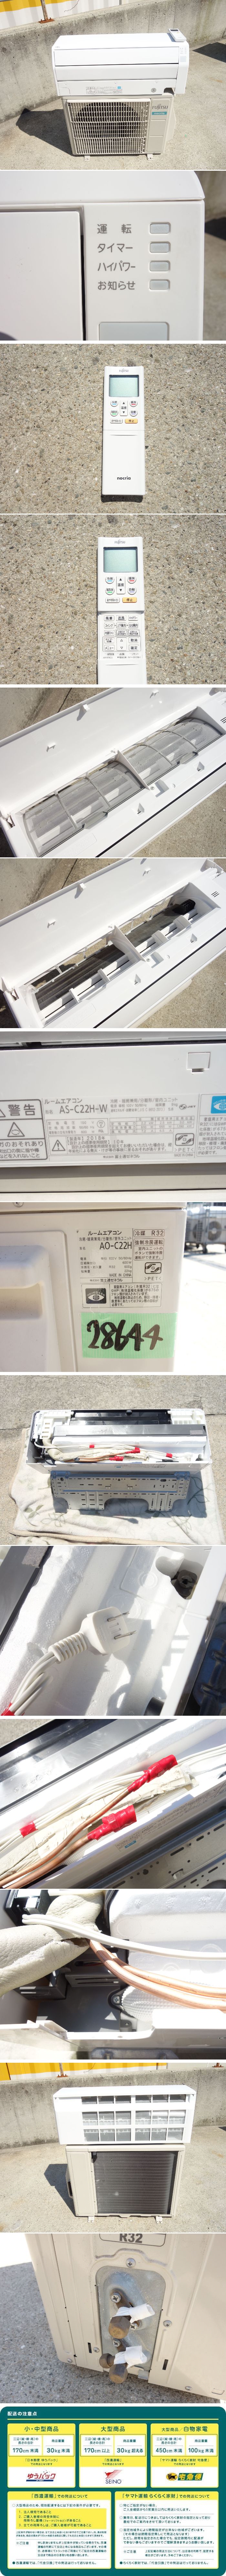 日本製品M▽即決 富士通 ルームエアコン 2018年 2.2kw ～8畳 nocria ノクリア ハイパワー運転 標準モデル AS-C22H (28644) 12畳未満